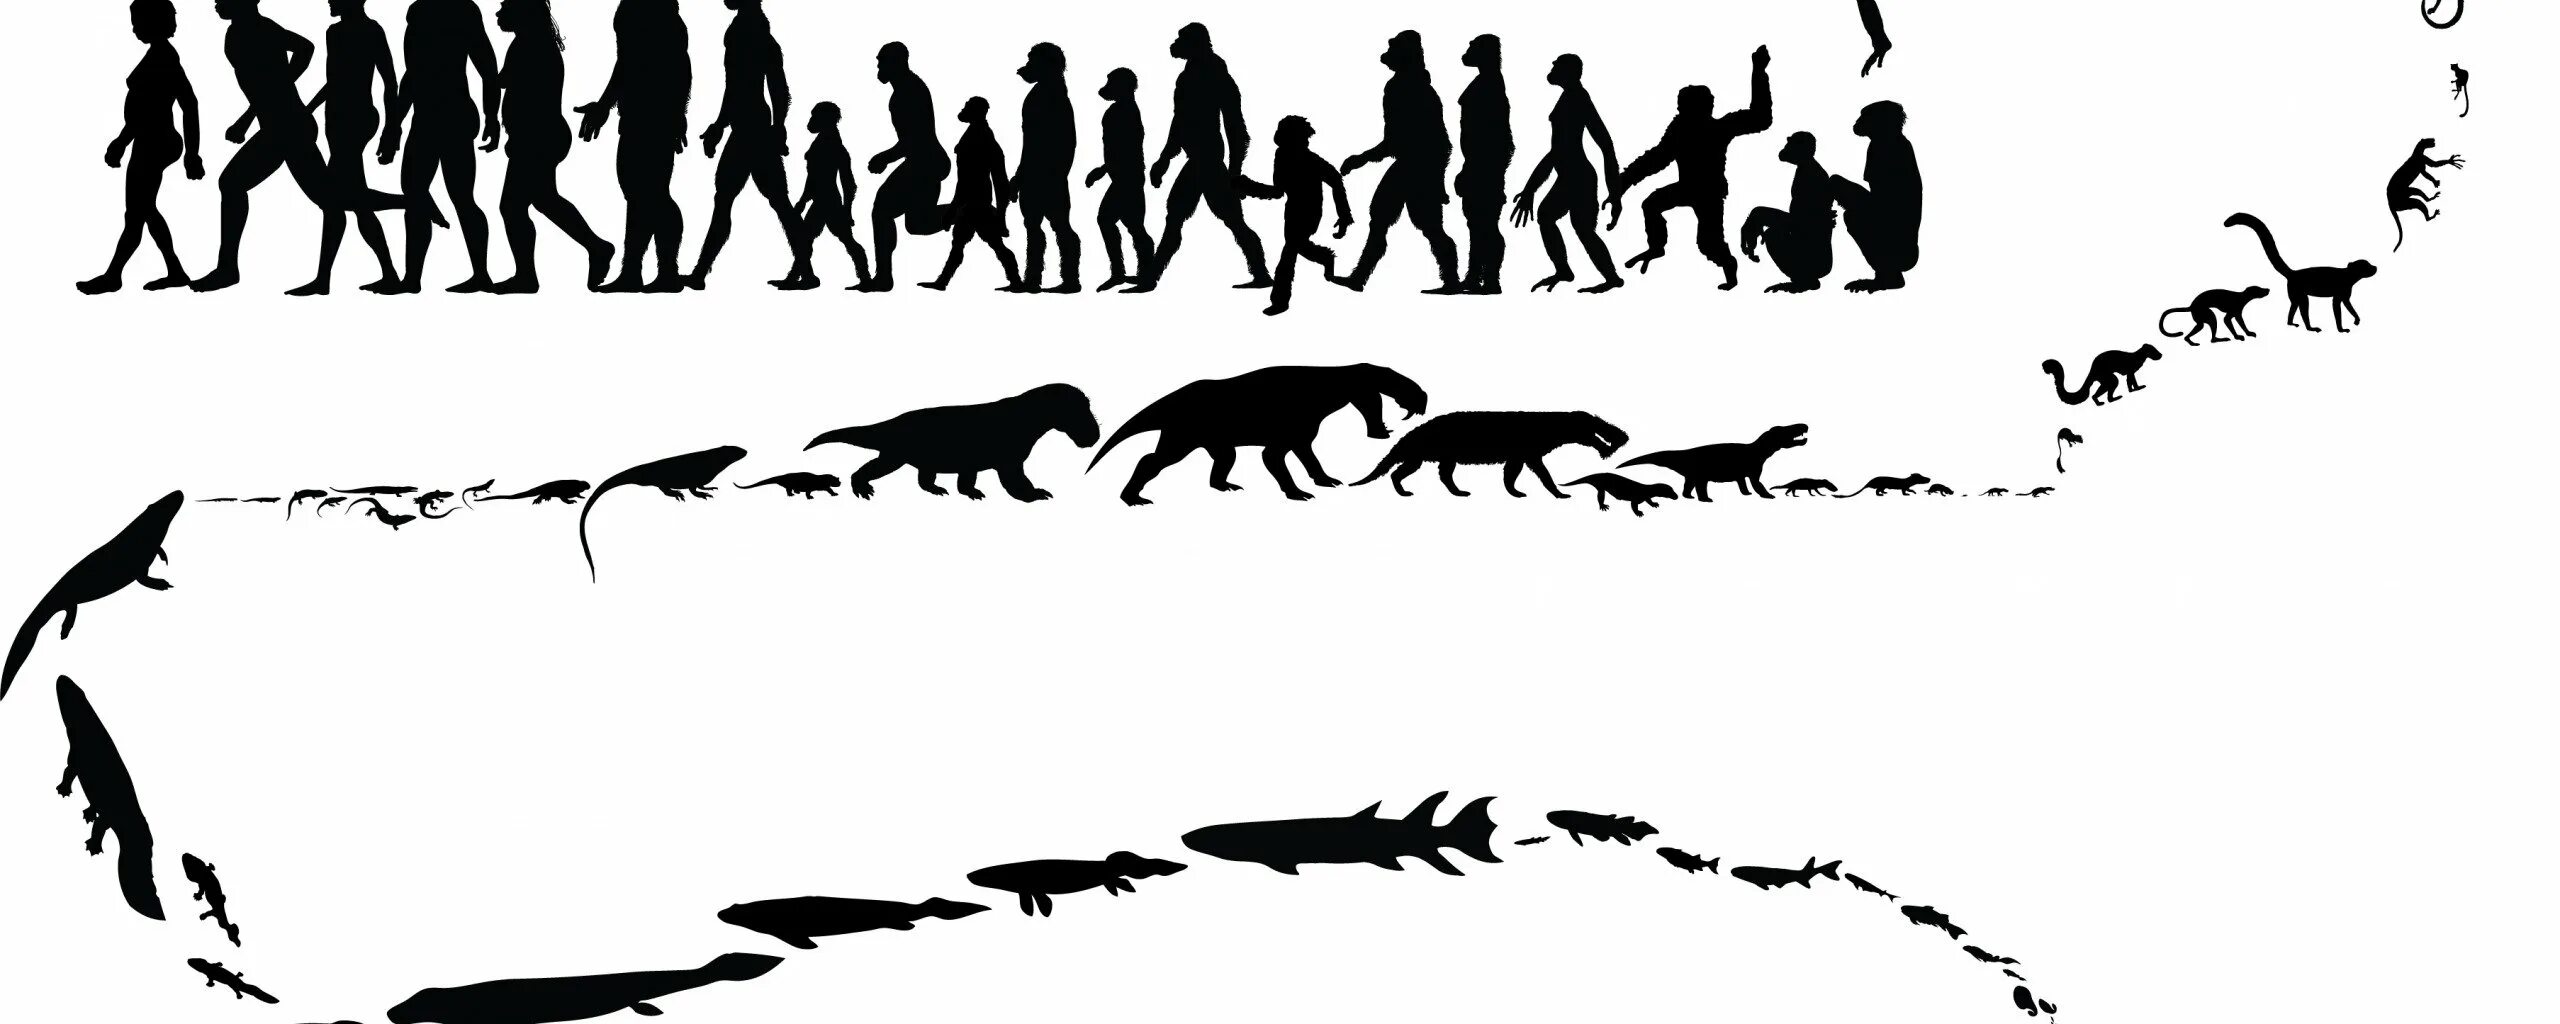 Жизни путем эволюции. Эволюция человека от клетки до человека. Эволюция Дарвина. Эволюция от бактерии до человека. От обезьяны до человека.